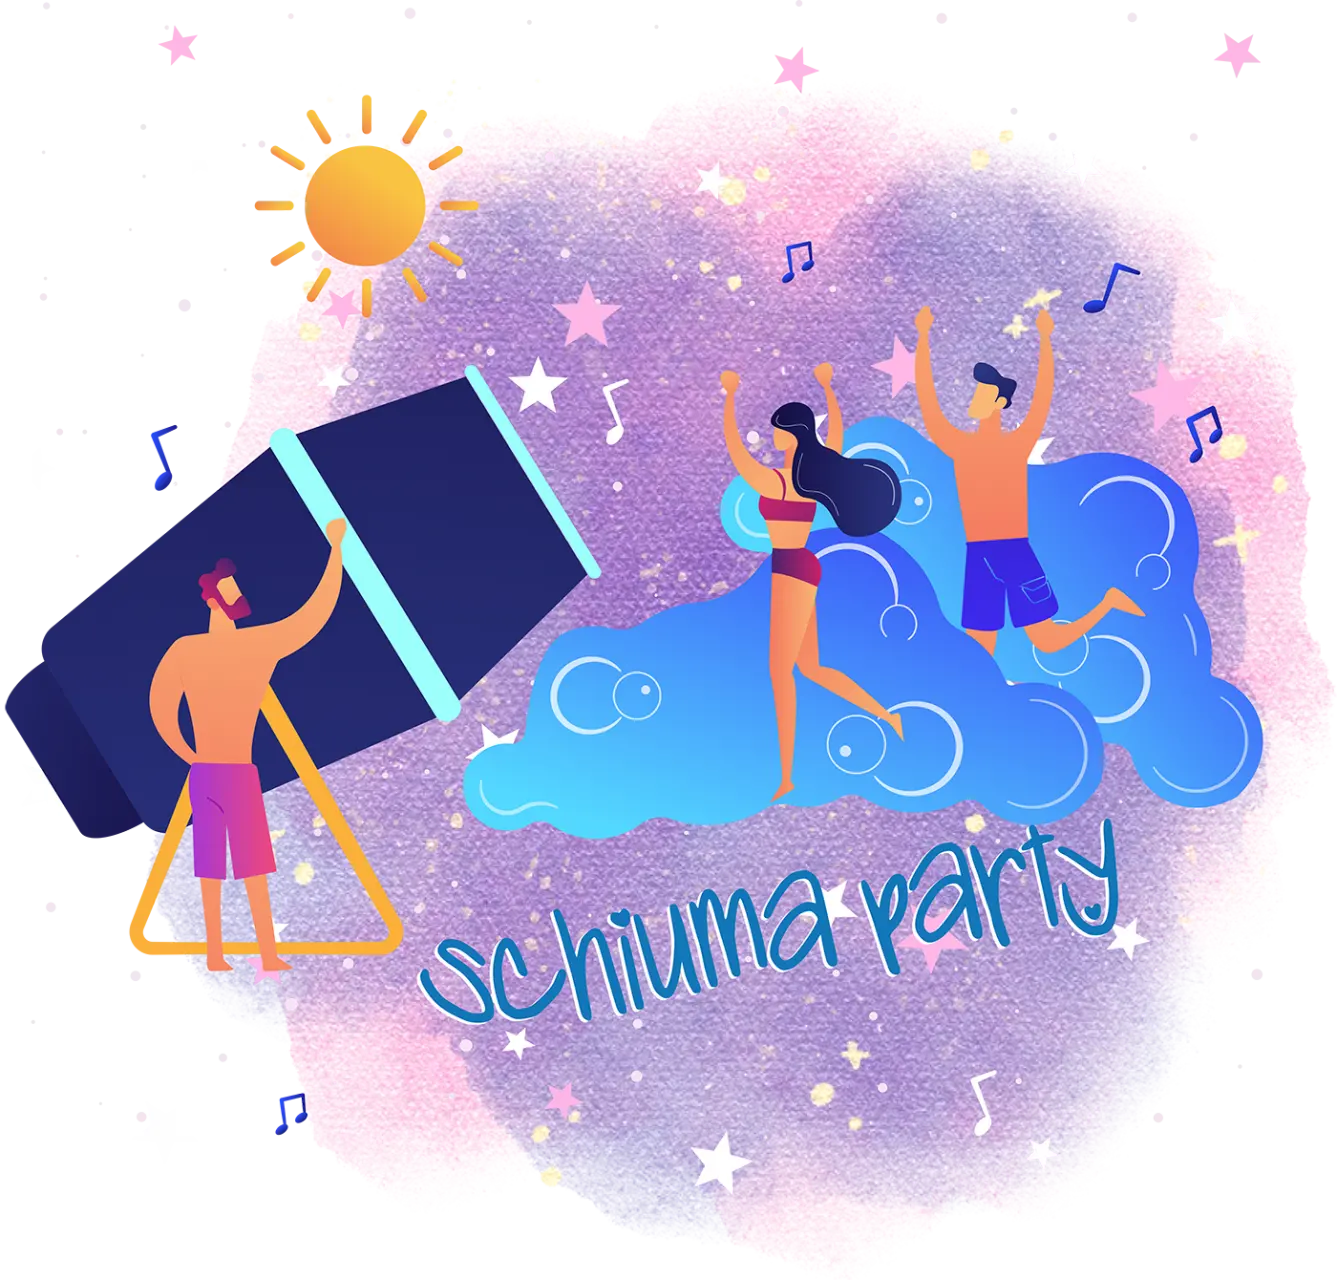 Schiuma party